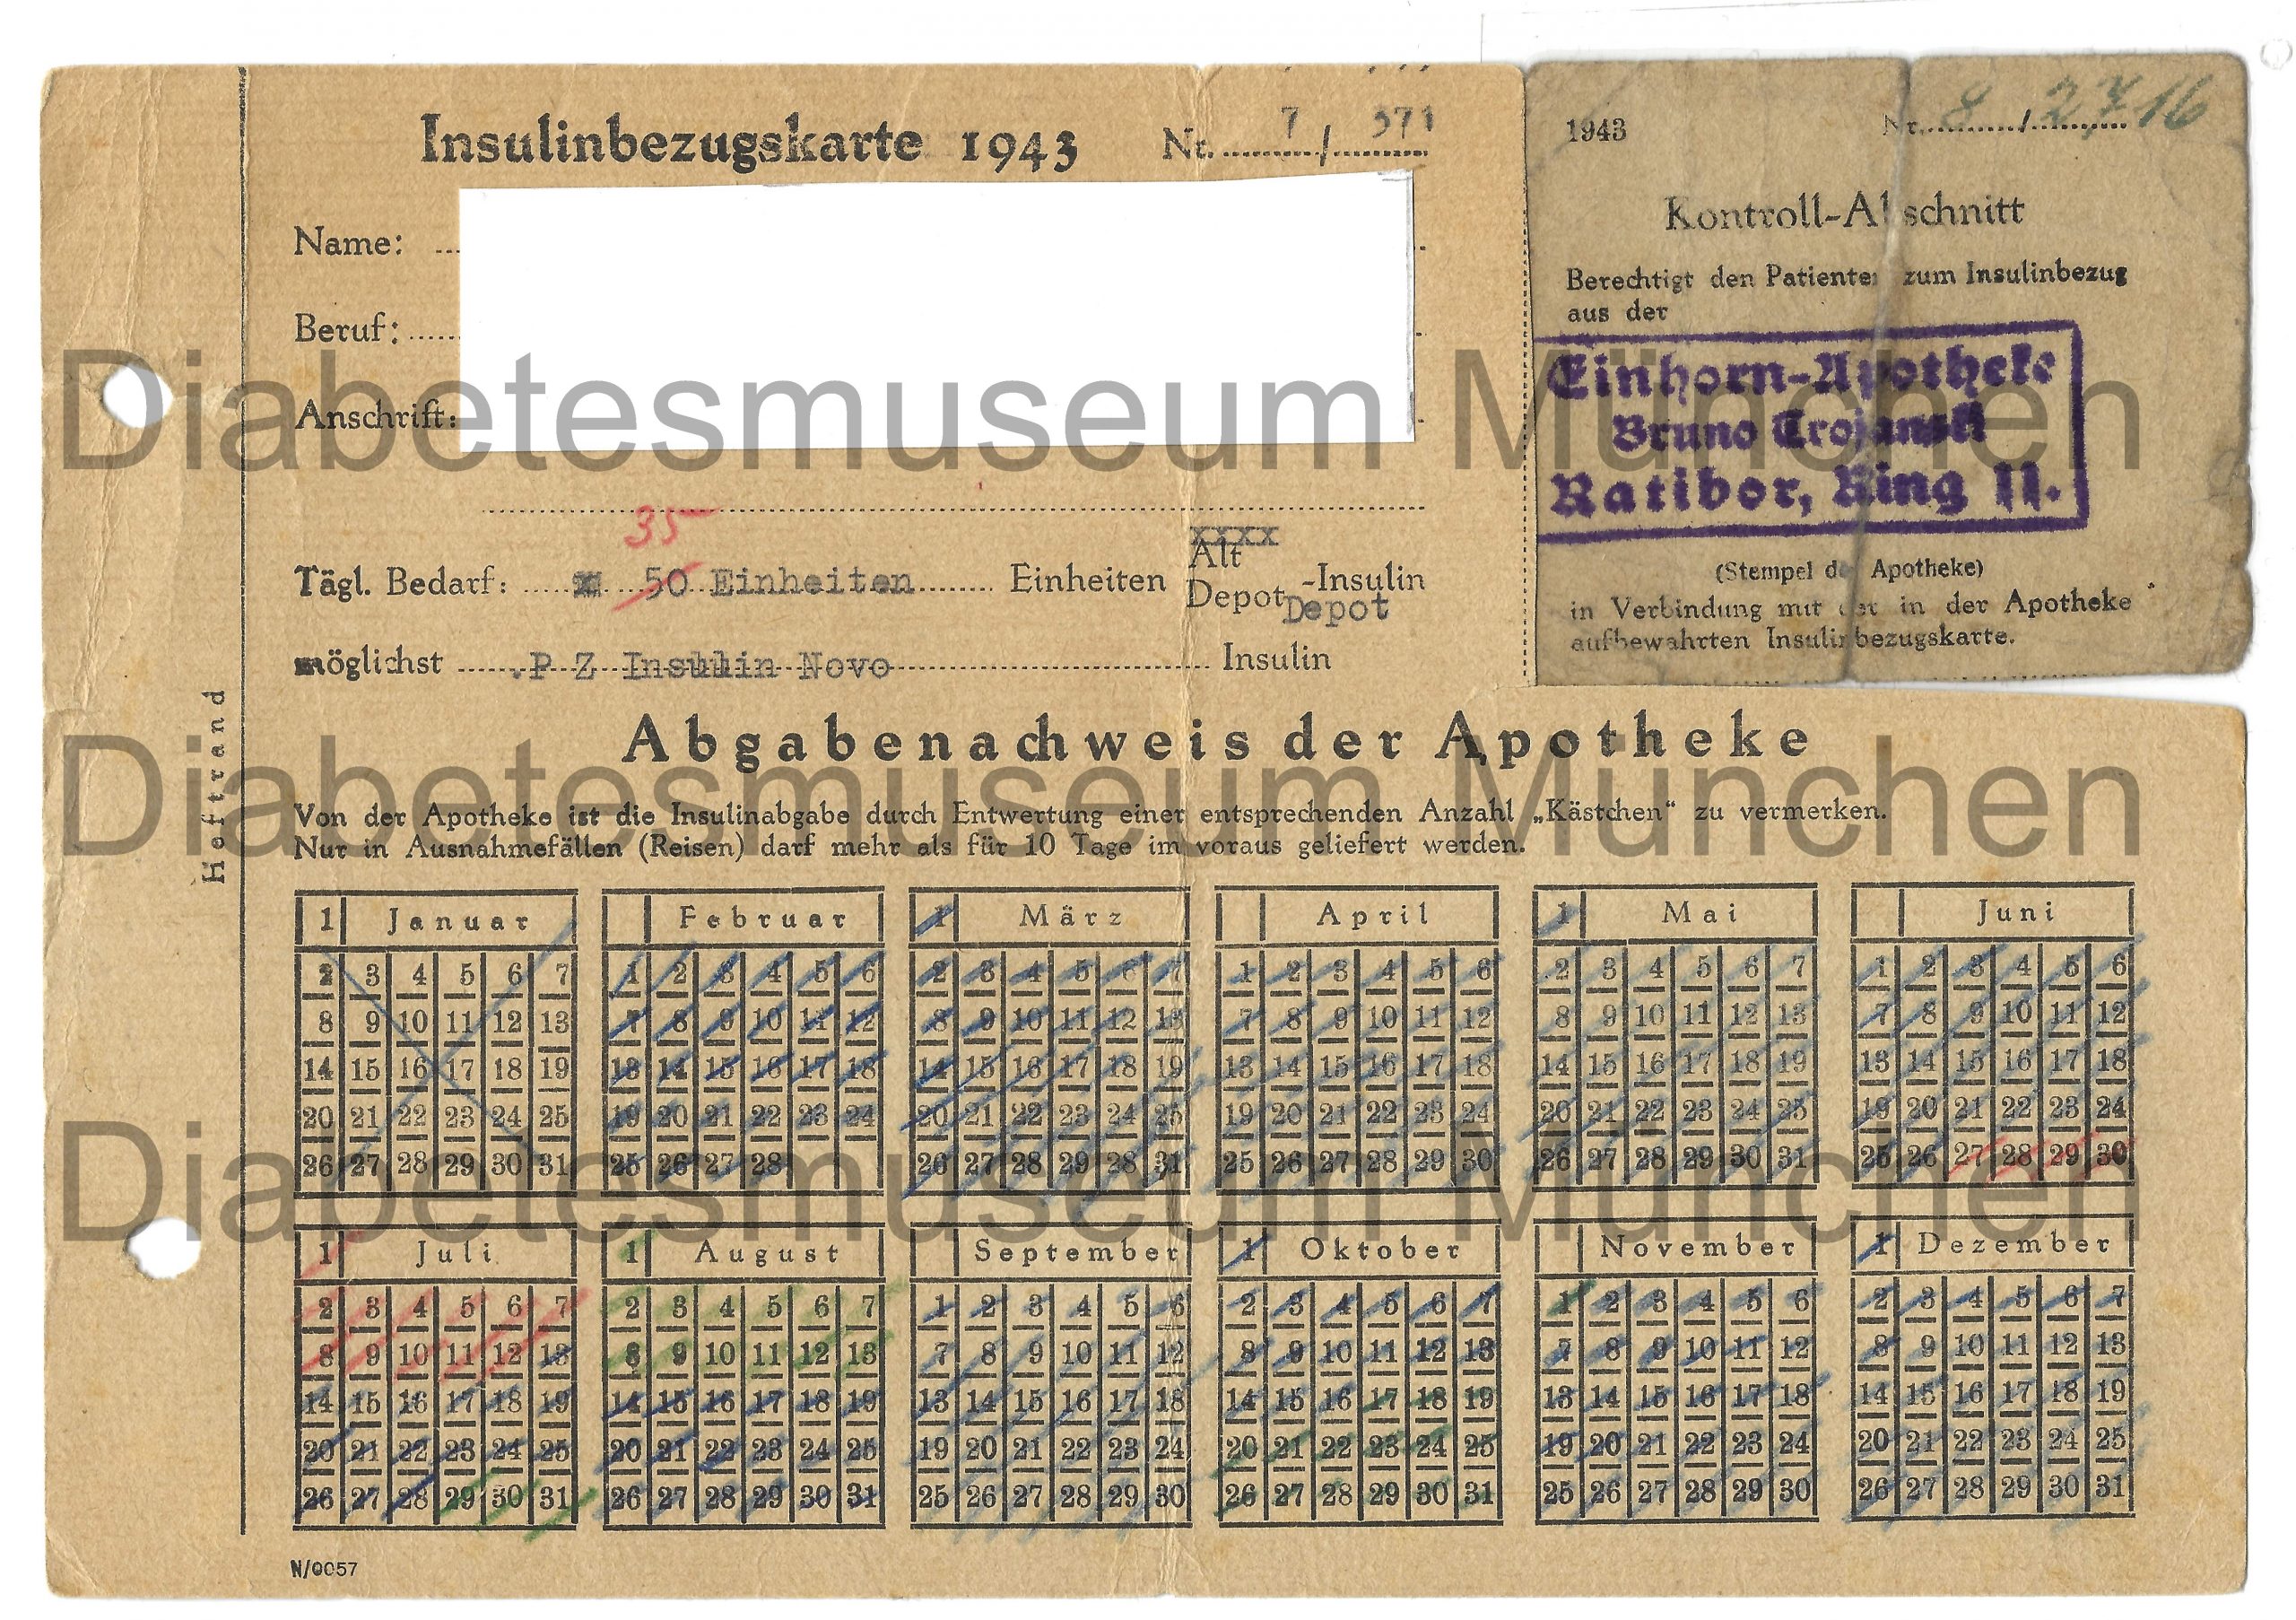 Vorderseite Insulinbezugskarte1943, Deutsches Reich